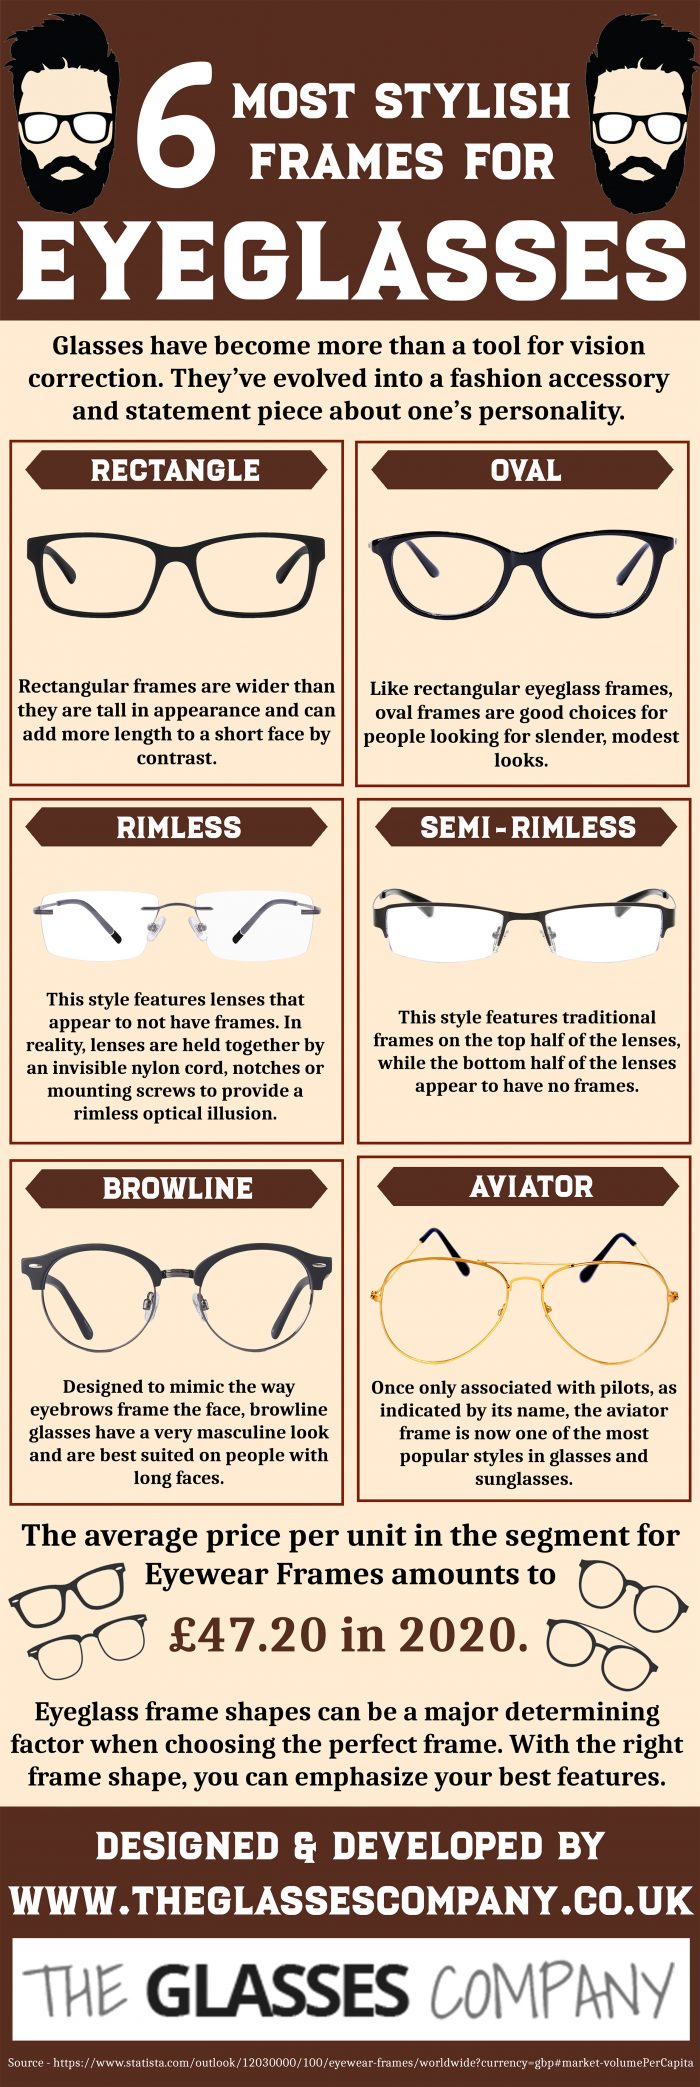 6 Most Stylish Frames for Eyeglasses